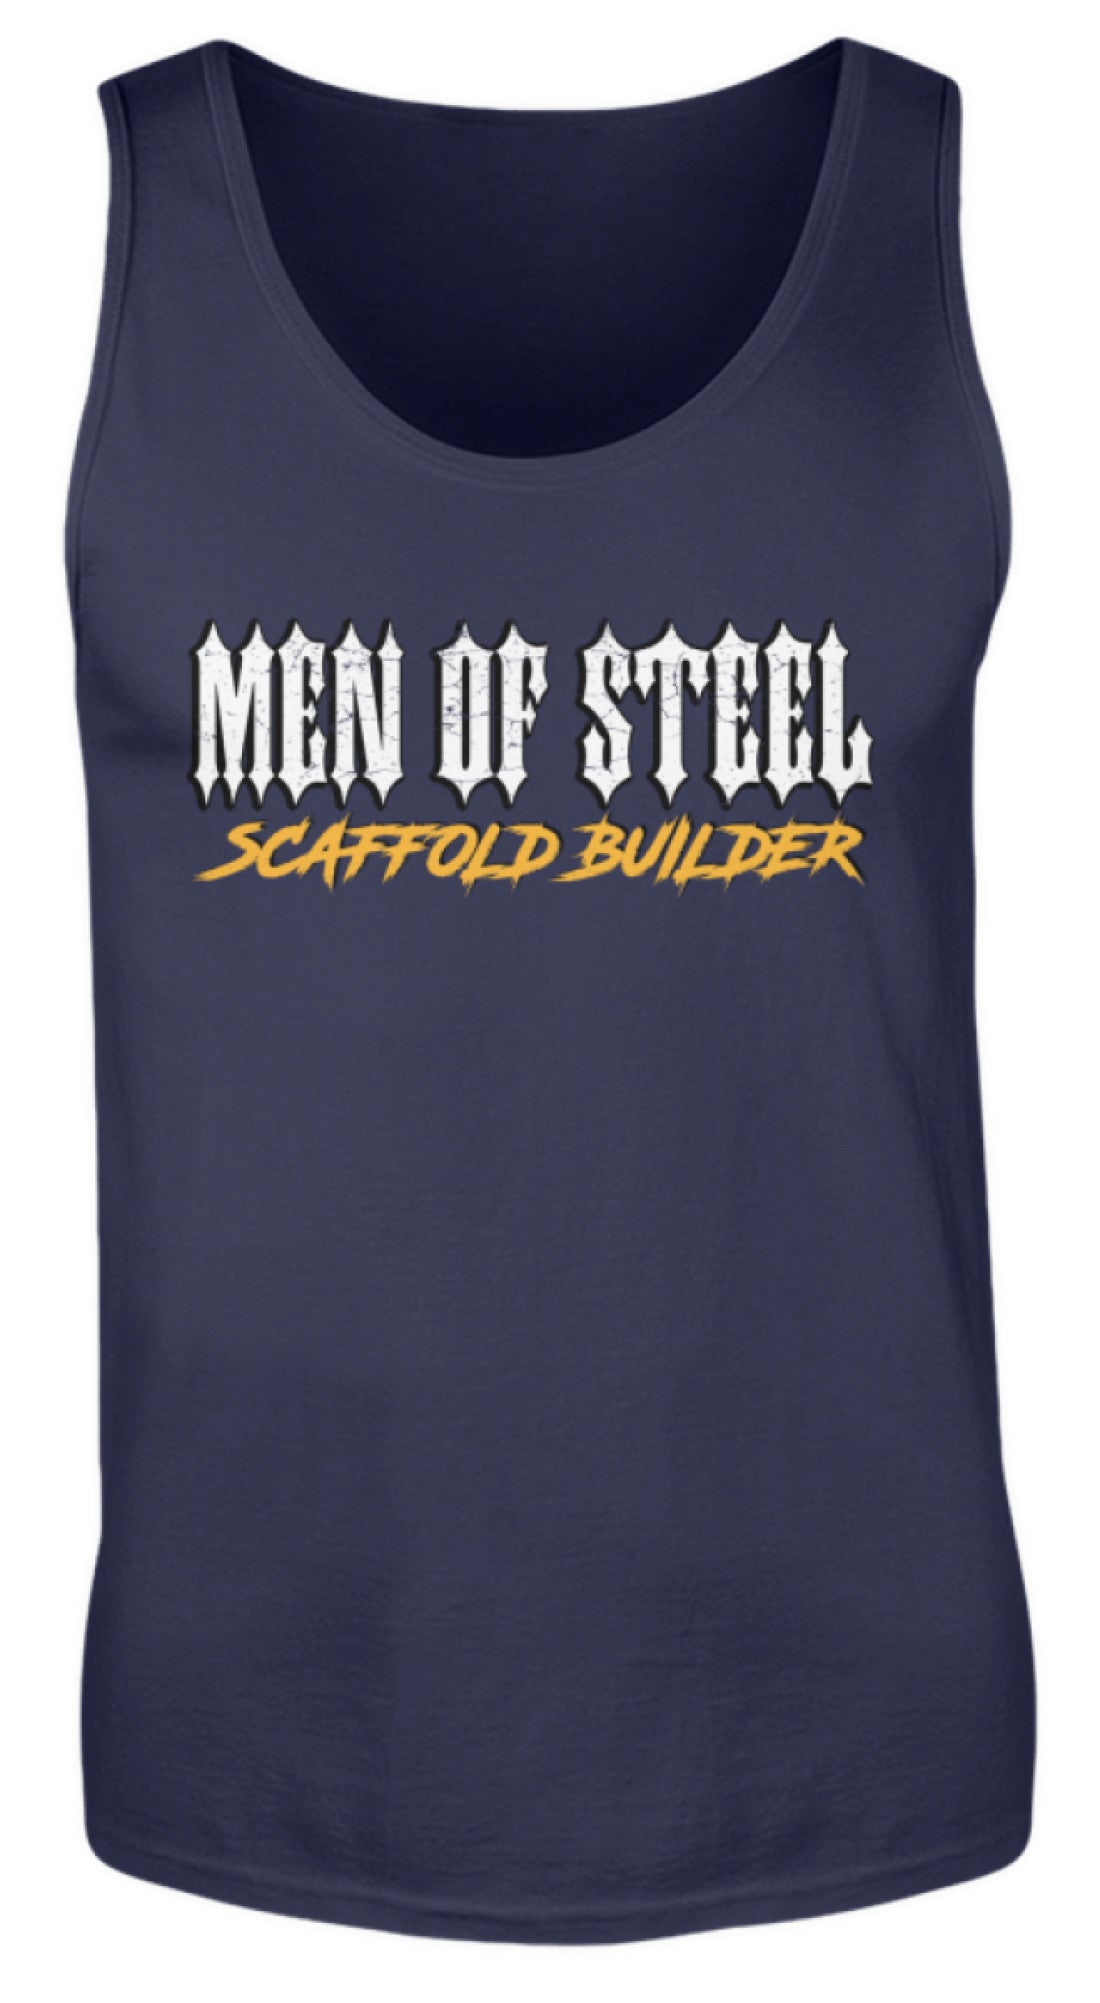 MEN OF STEEL / Scaffold Builder  - Herren Tanktop €19.95 Gerüstbauer - Shop >>